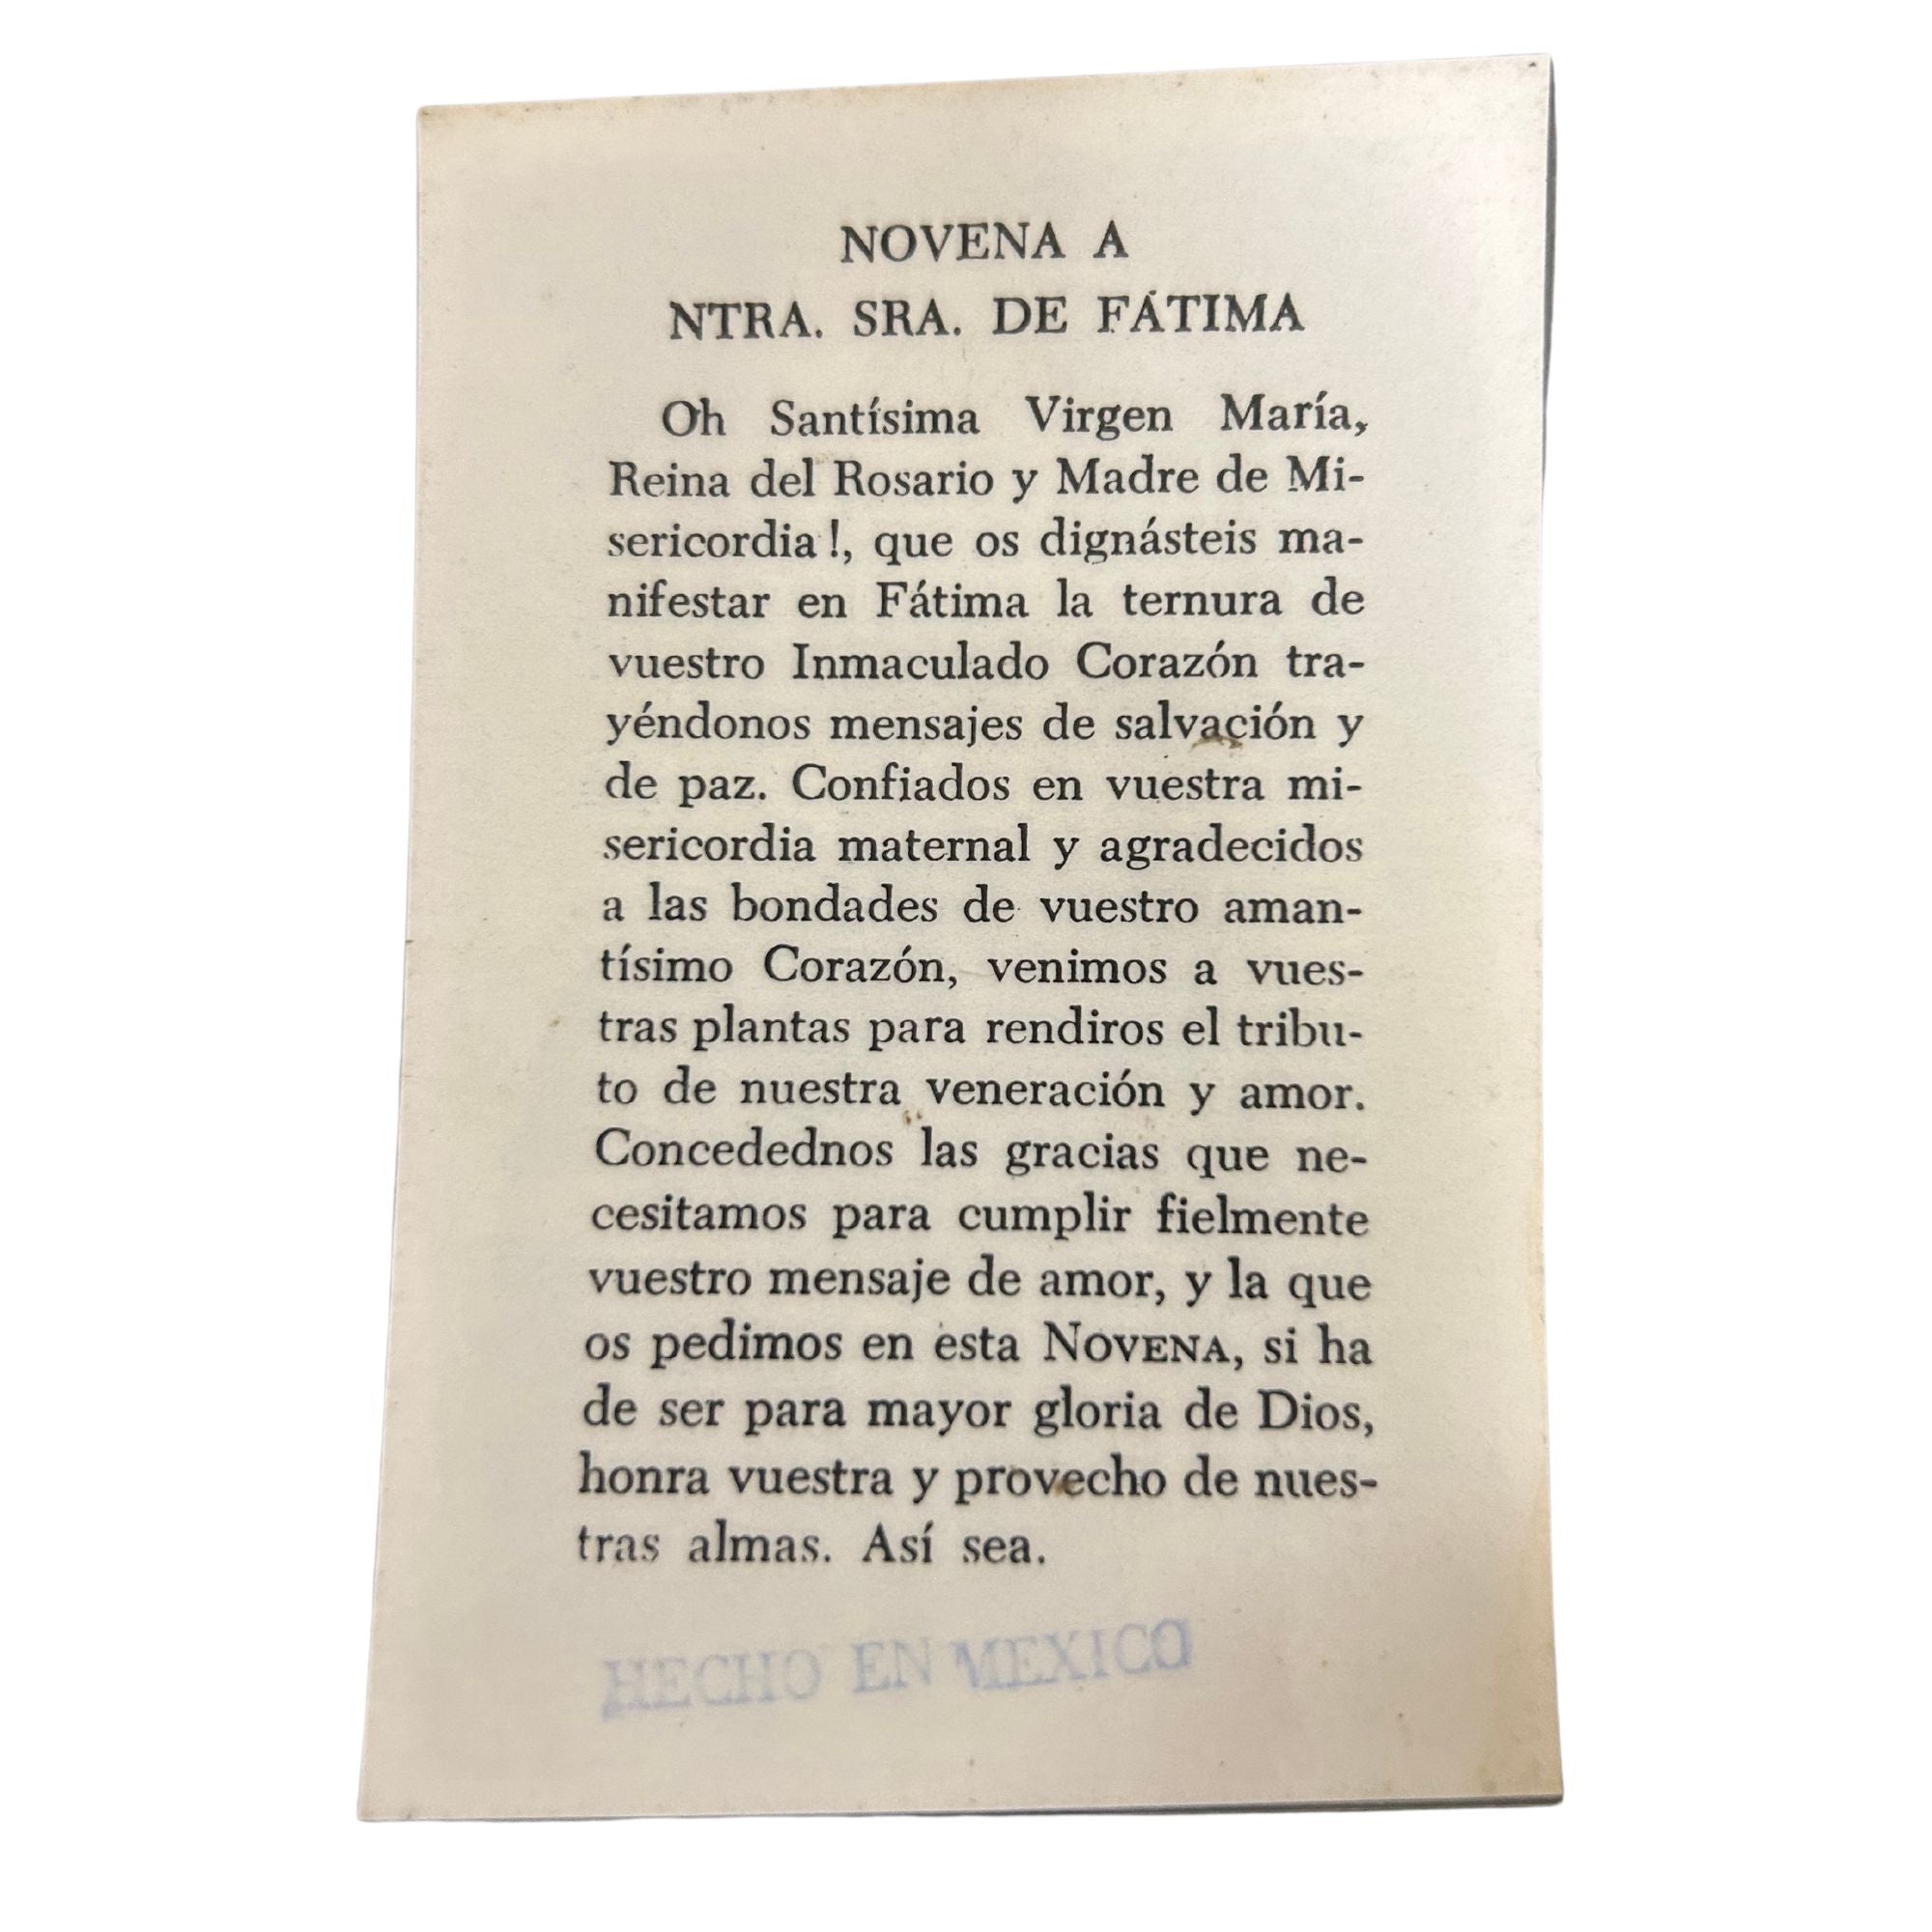 Ntra. Sra. de Fatima Prayer Card (Vintage)